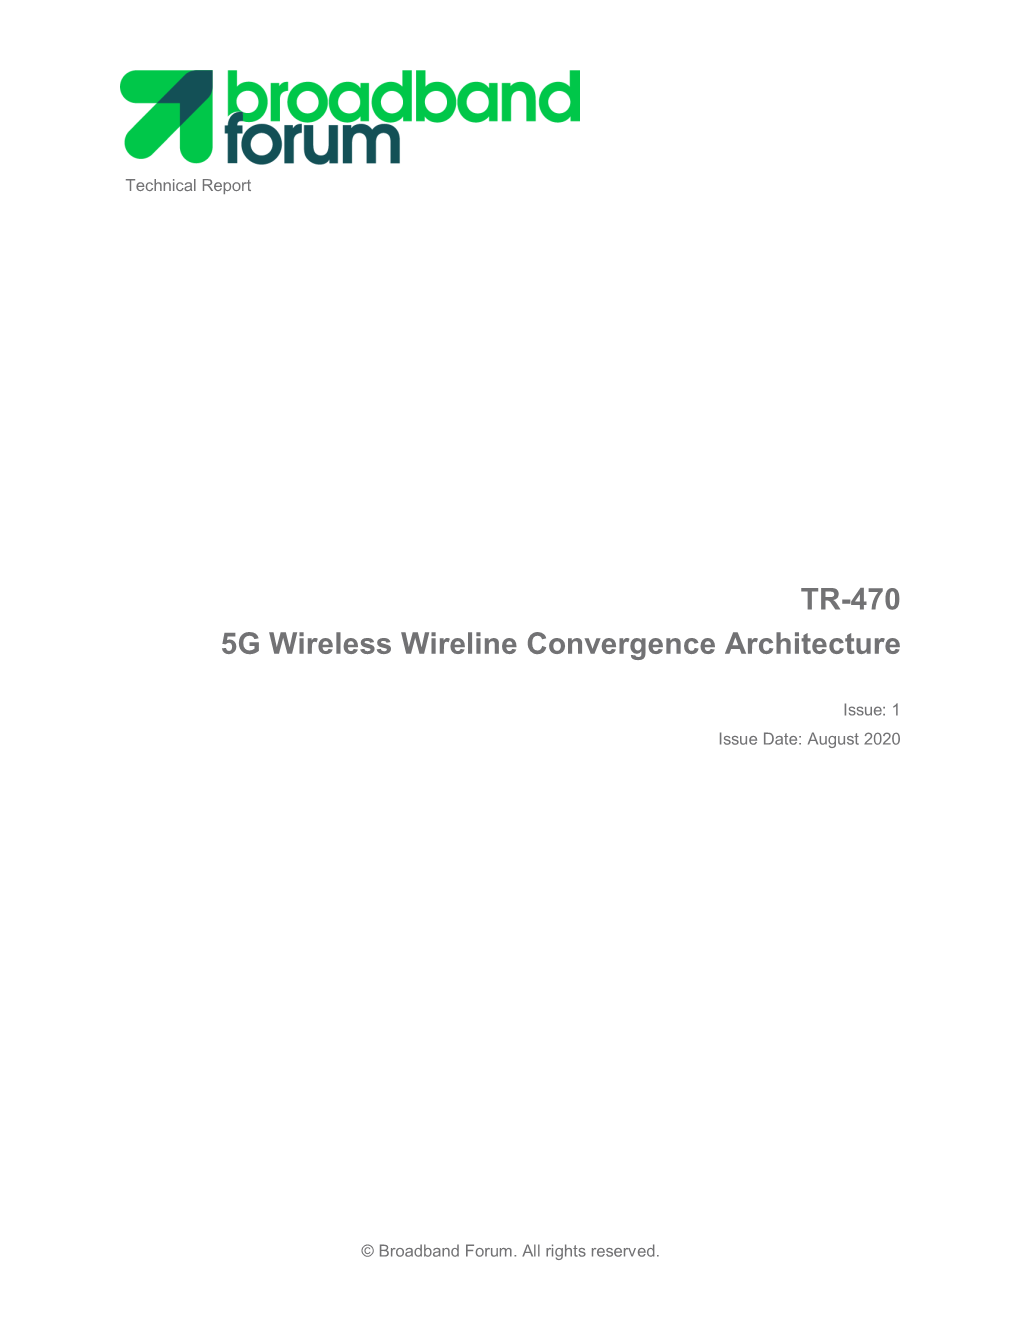 TR-470 5G Wireless Wireline Convergence Architecture